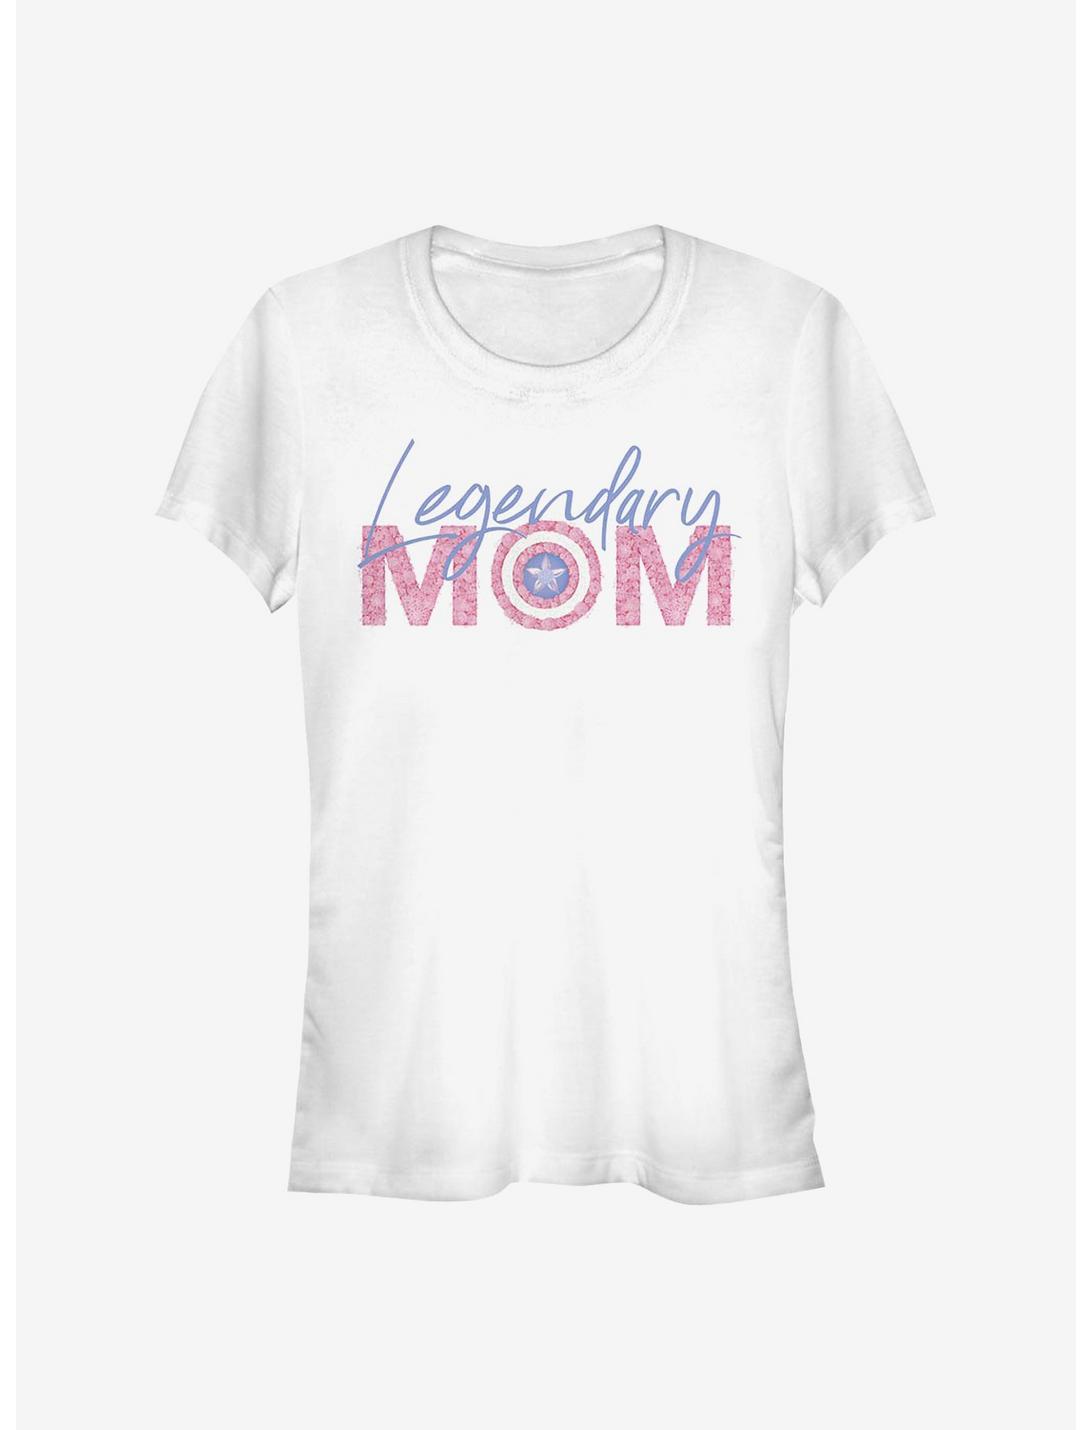 Marvel Captain America Legendary Mom Flowers Girls T-Shirt, WHITE, hi-res